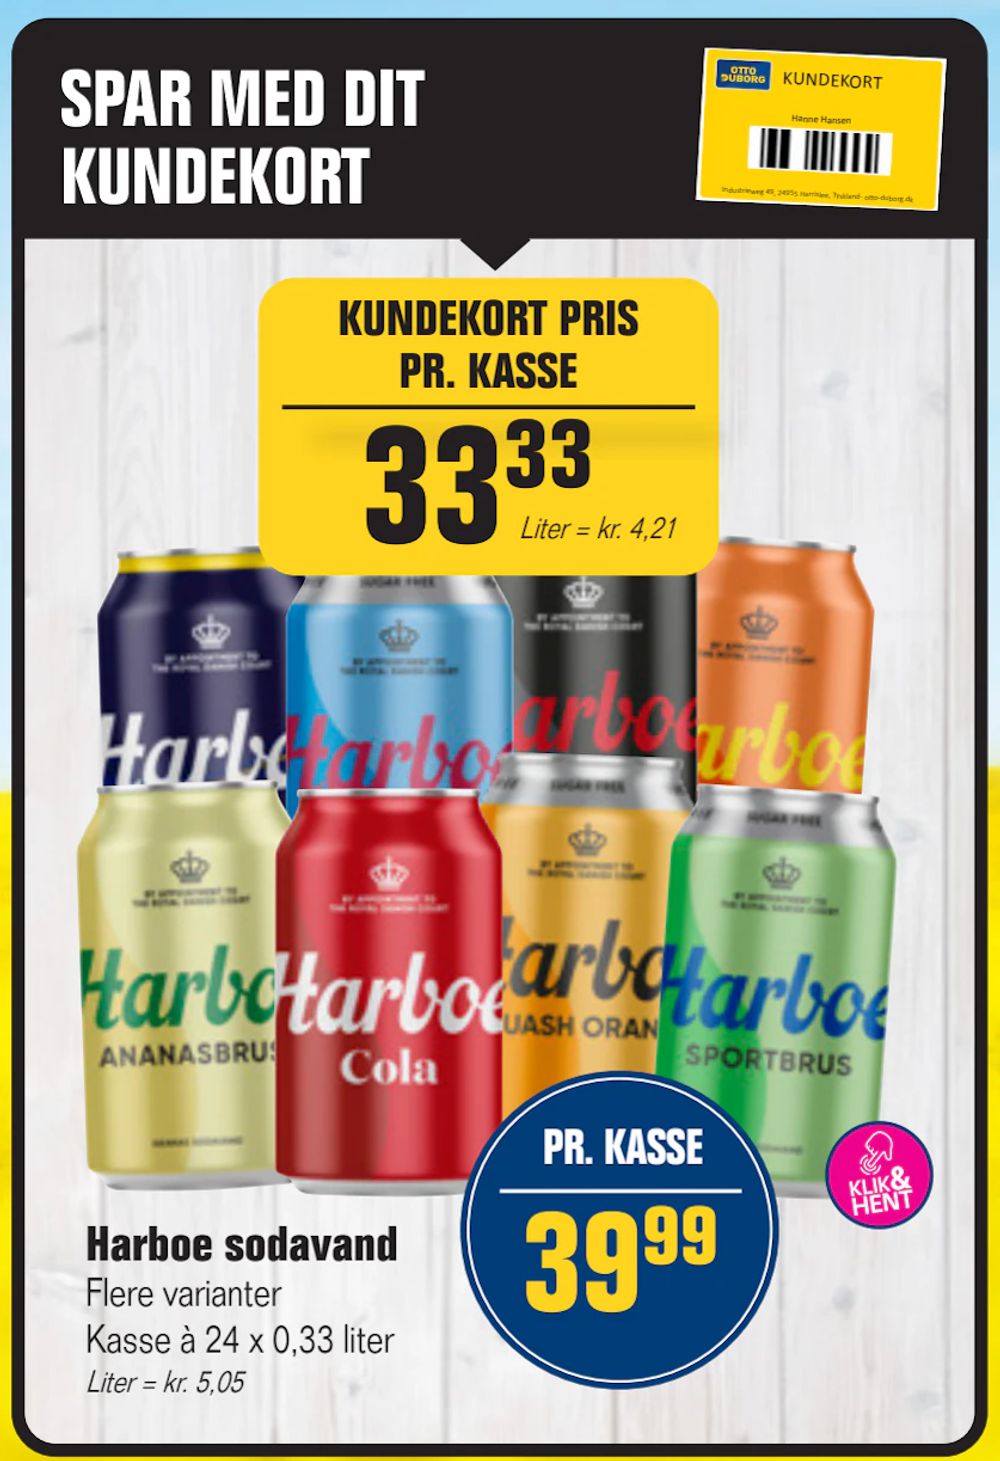 Tilbud på Harboe sodavand fra Otto Duborg til 39,99 kr.